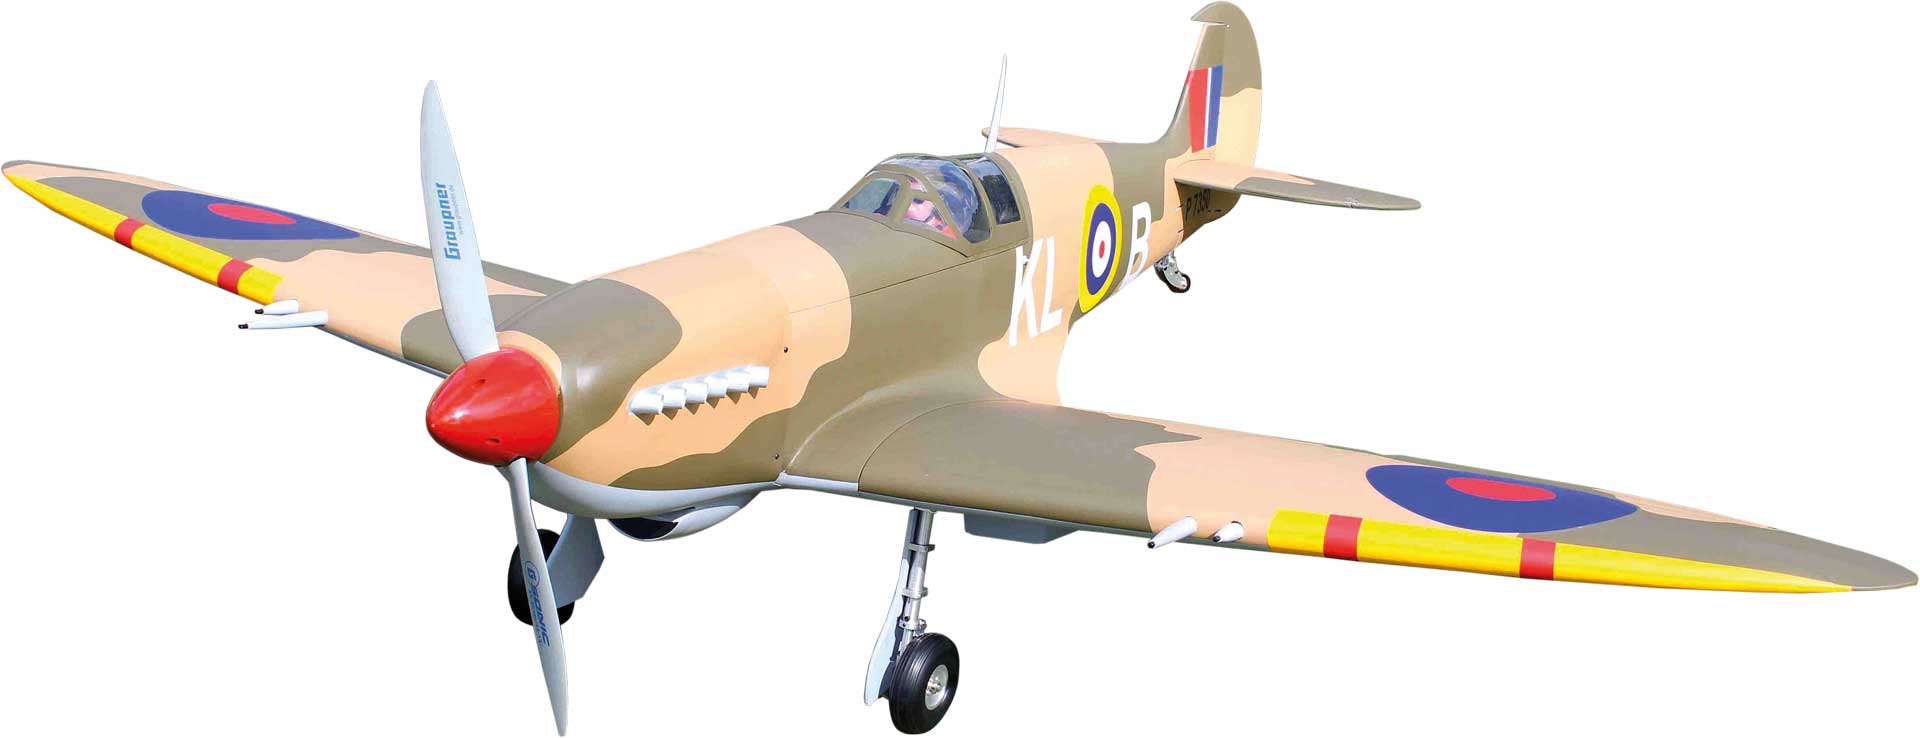 Seagull Models ( SG-Models ) Spitfire Giant 86" 55cc w/o landing gear matt finish, Warbird, "Battle of Britain